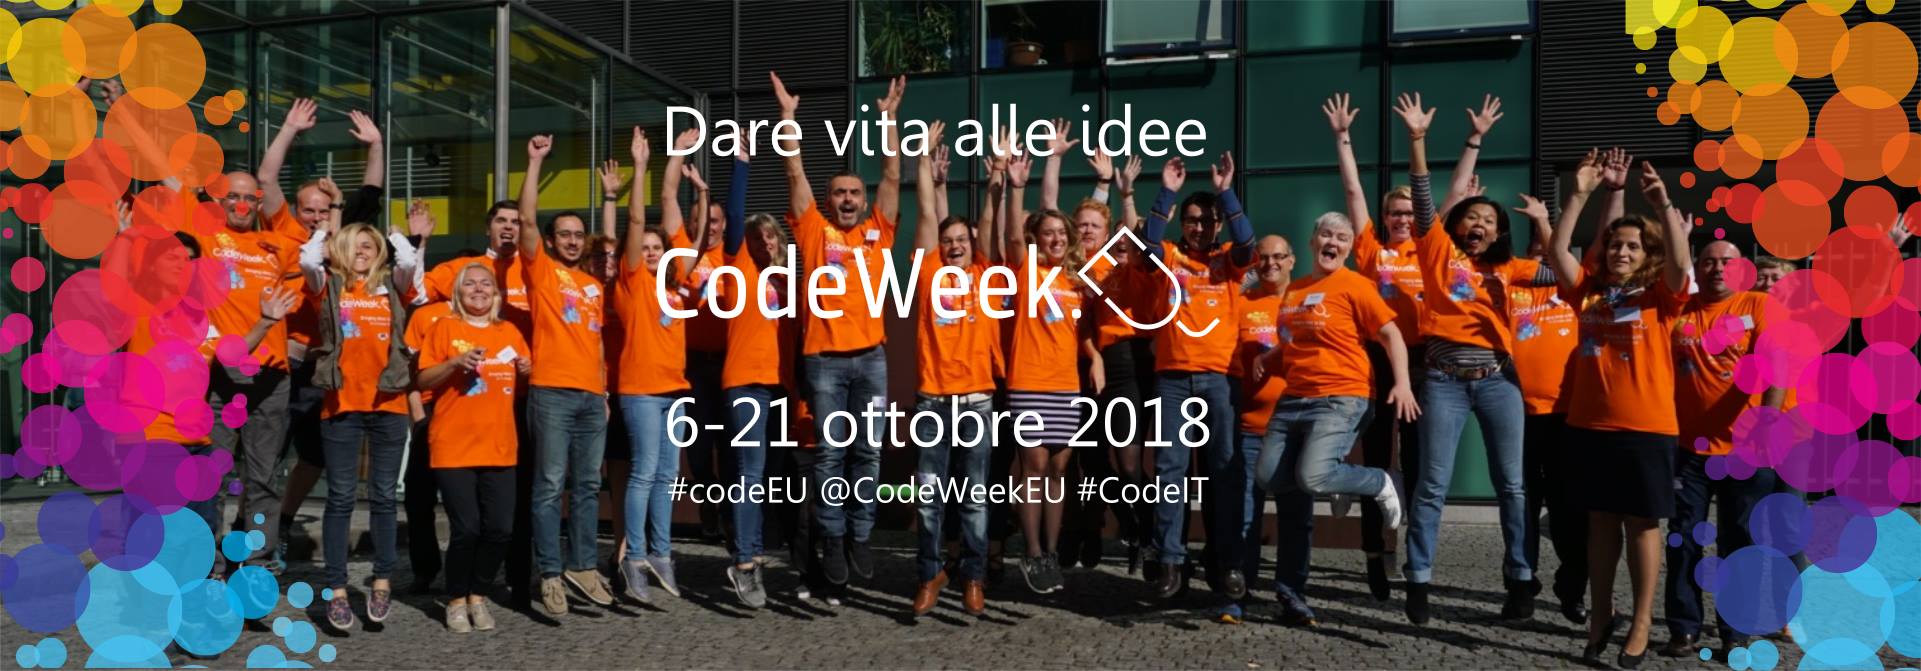 immagine codeweek2018